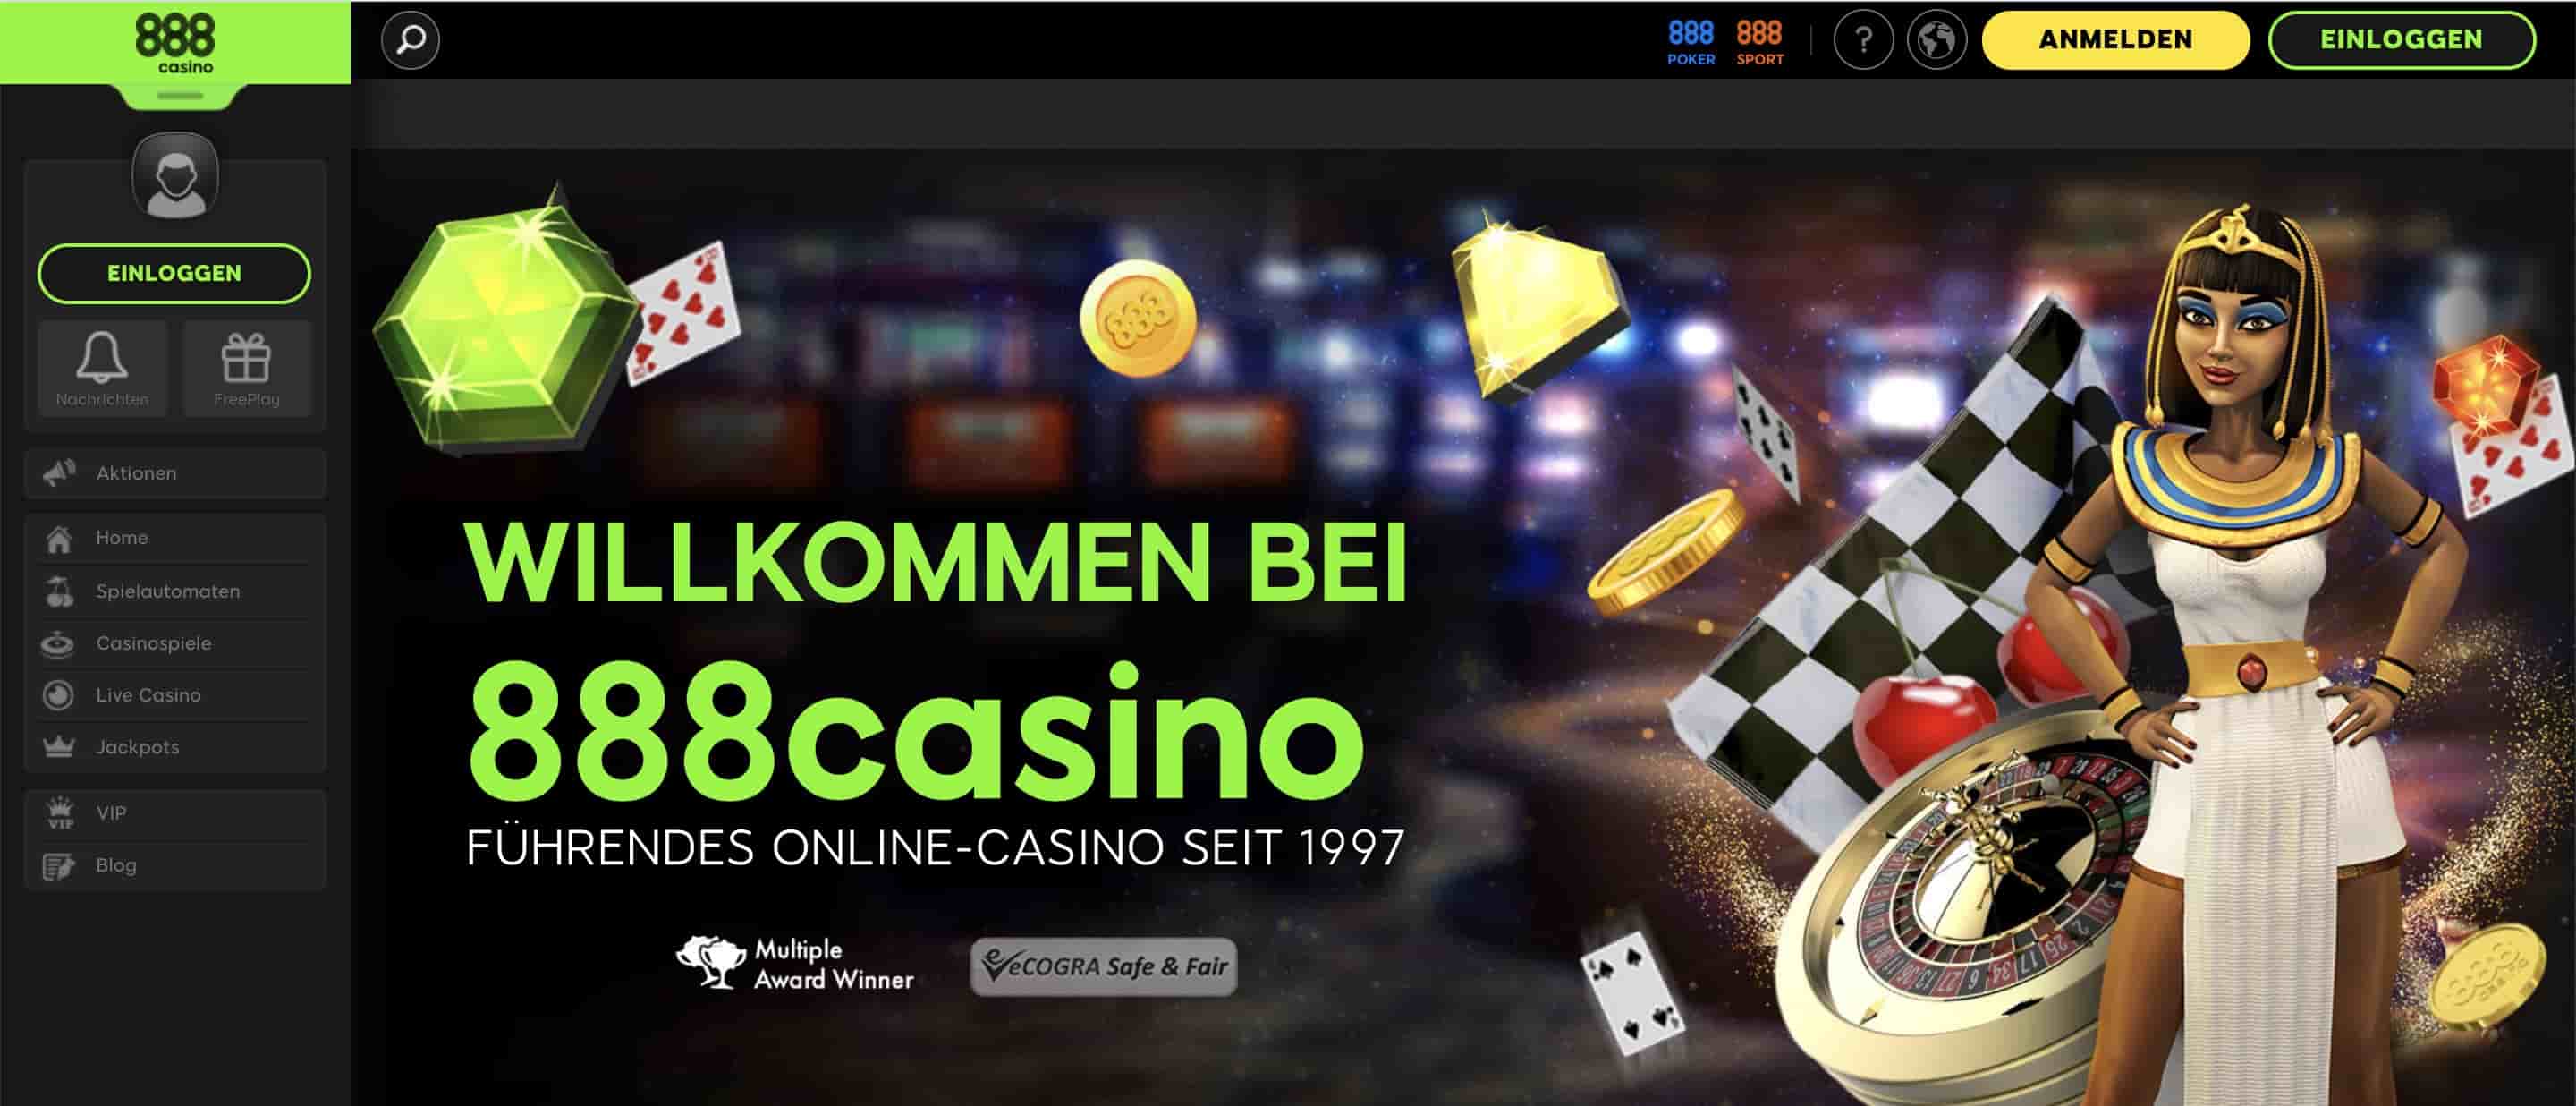 888 casino homepage screenshot